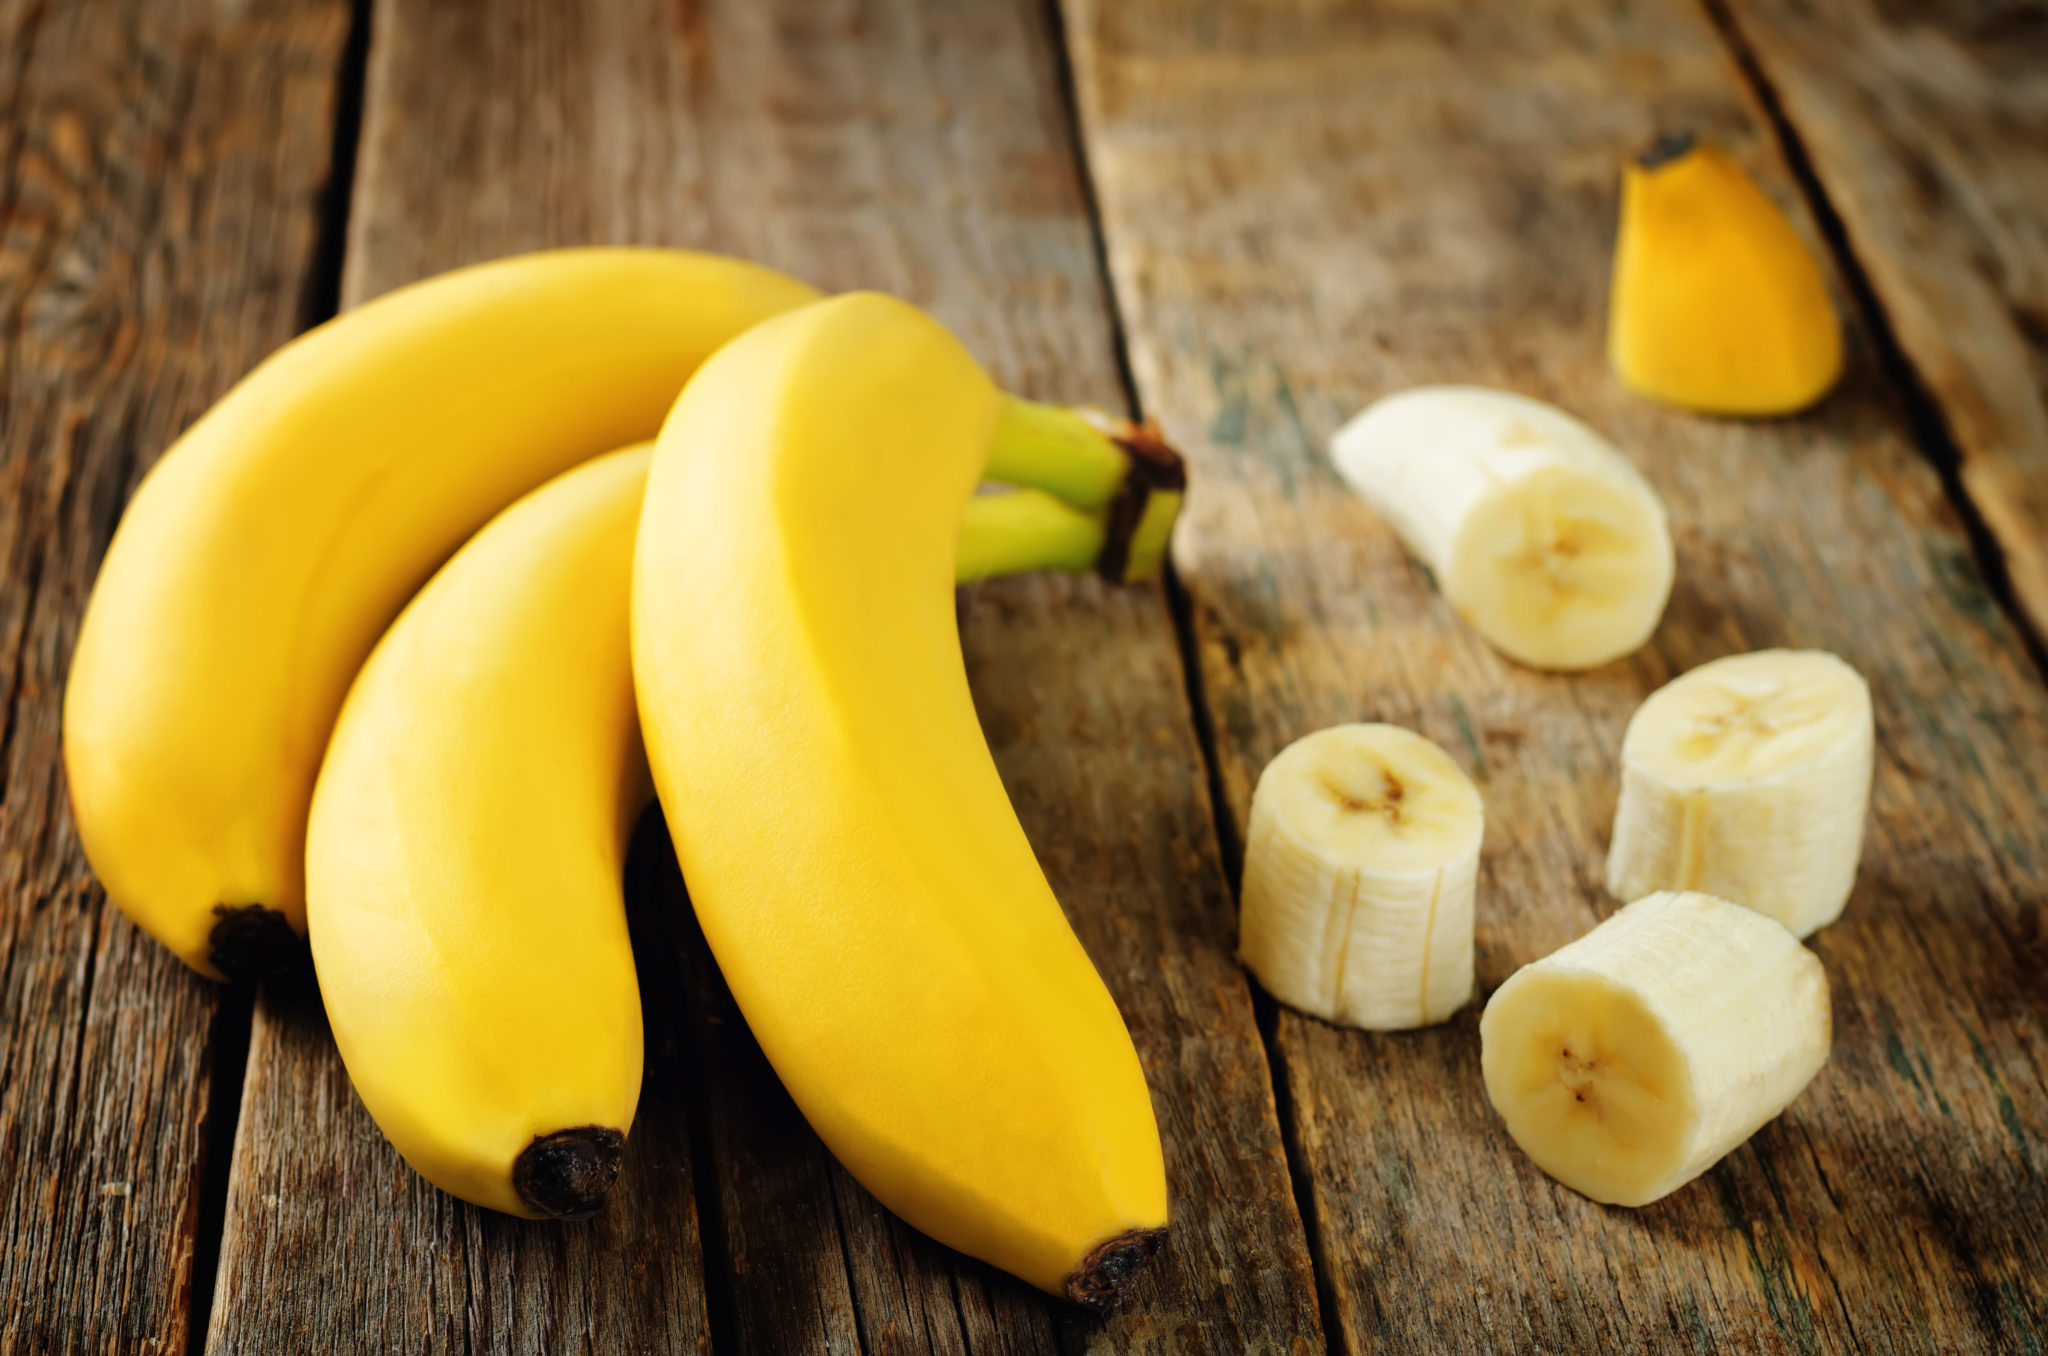 バナナ用資材 | 激安資材なら青果農業資材.com